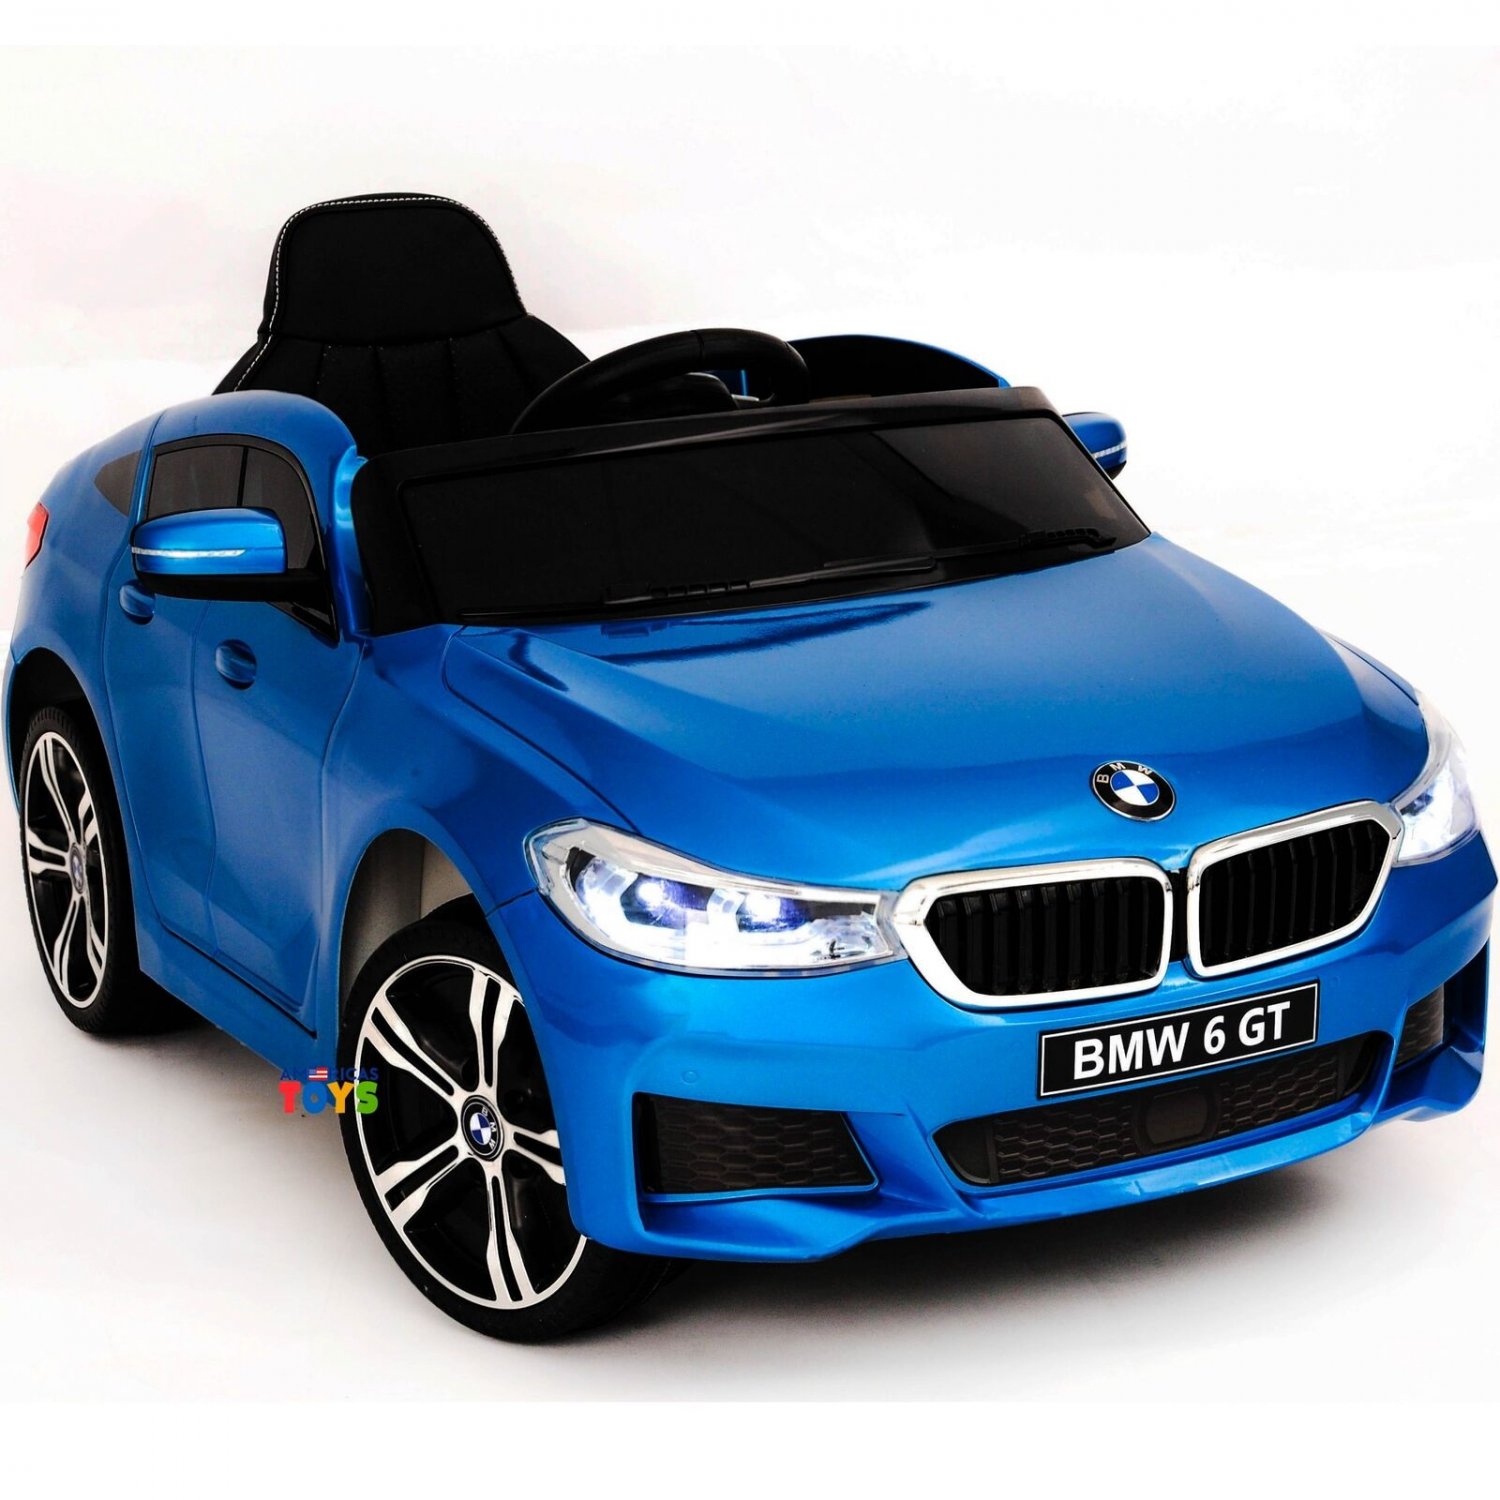 Бмв игрушка купить. Детский электромобиль BMW gt (i8 Vision). Игрушка BMW gt 6. БМВ 6 gt синяя. Игрушка БМВ 435gt.